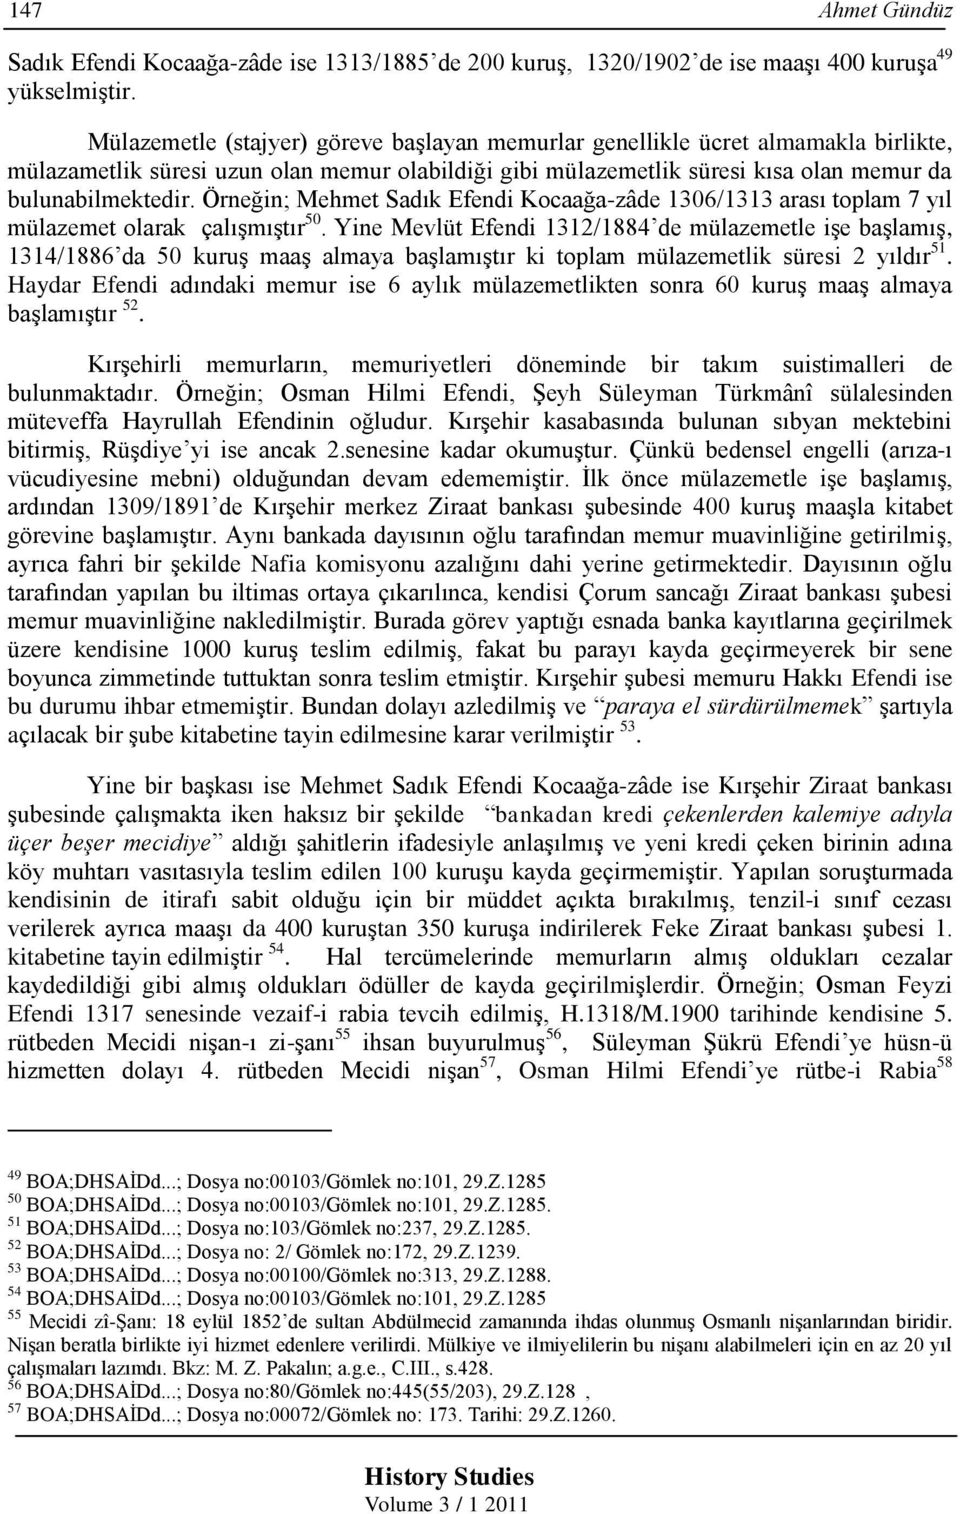 Örneğin; Mehmet Sadık Kocaağa-zâde 1306/1313 arası toplam 7 yıl mülazemet olarak çalışmıştır 50.